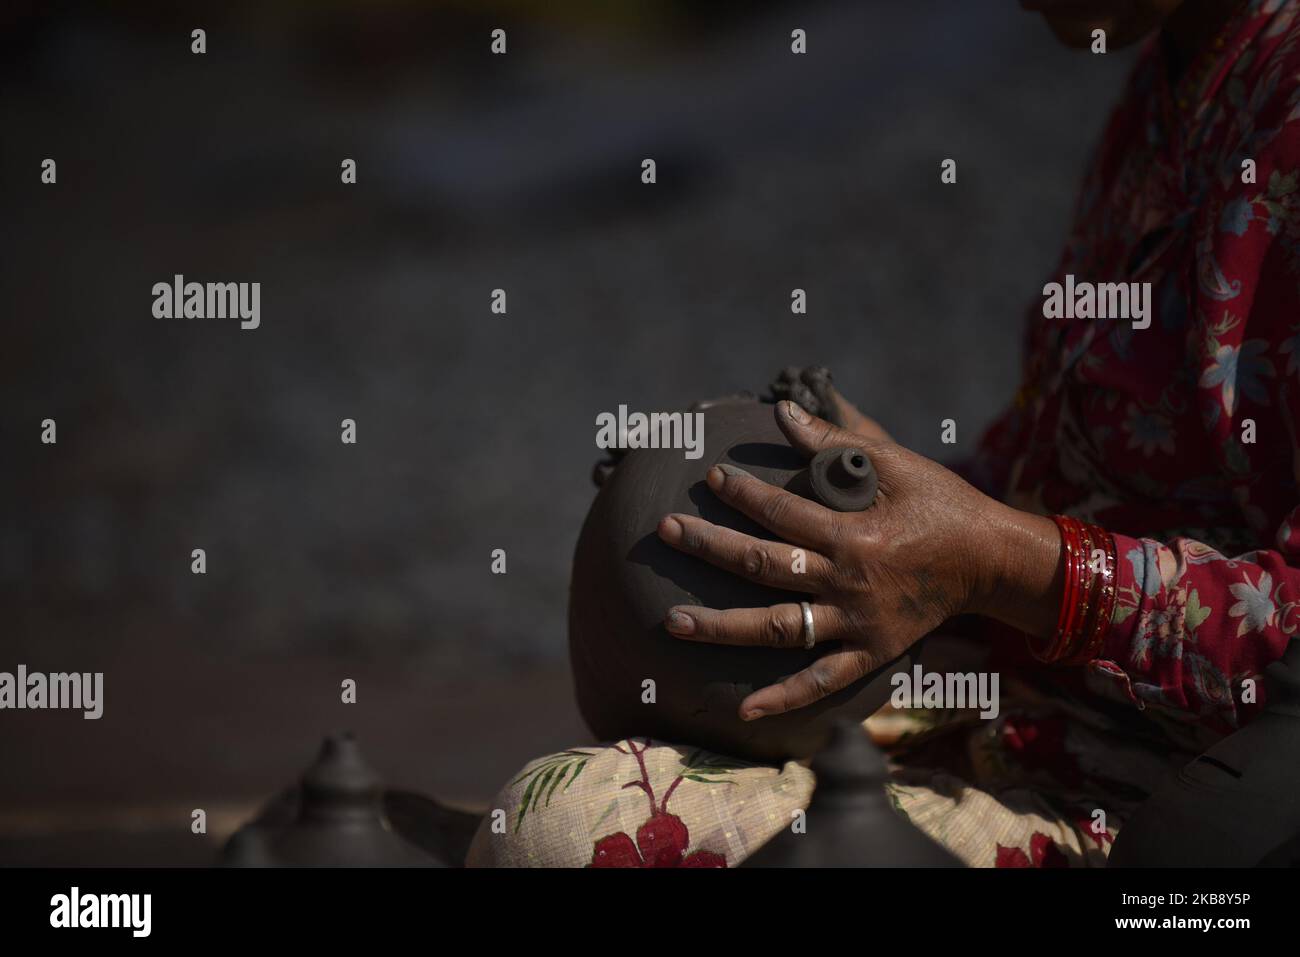 Eine Frau, die Tontopf in ihrer Werkstatt am Pottery Square, Bhaktapur, Nepal, am Dienstag, den 22. Oktober 2019, herstellte. Nepalese Potter arbeitet an ihrer traditionellen Töpferei in kleinem Maßstab in Bhaktapur, Nepal. Bhaktapur ist eine alte Stadt im Kathmandu Valley und wird aufgrund seiner reichen Kultur, Tempel und Holz-, Metall- und Steinkunst von der UNESCO zum Weltkulturerbe erklärt. (Foto von Narayan Maharjan/NurPhoto) Stockfoto